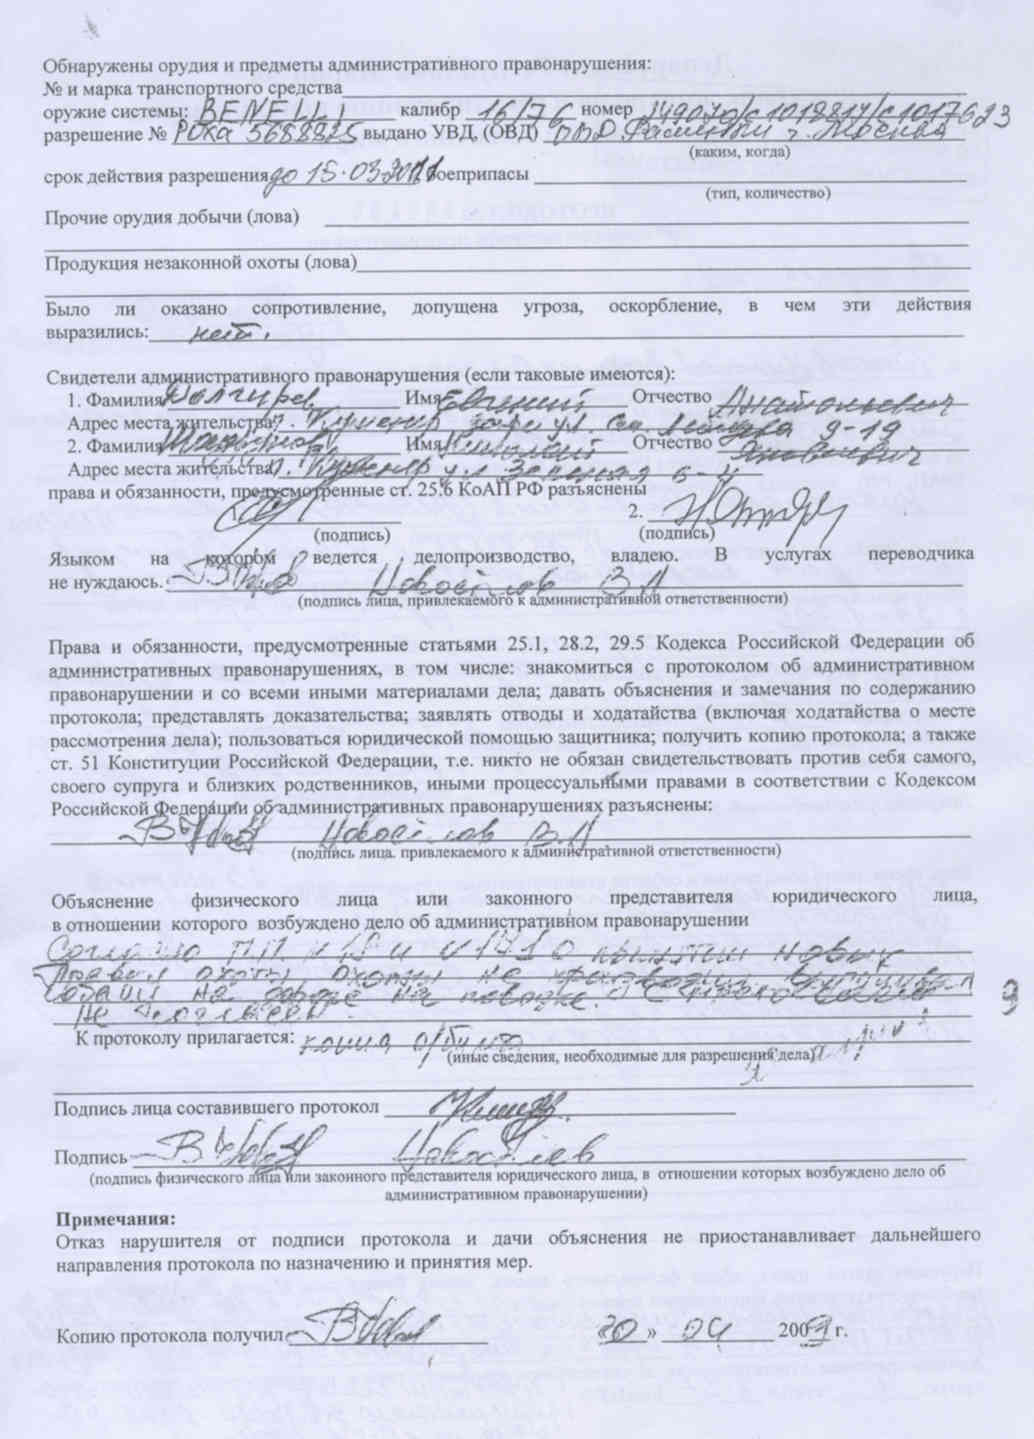 Подпись протокола об административном правонарушении